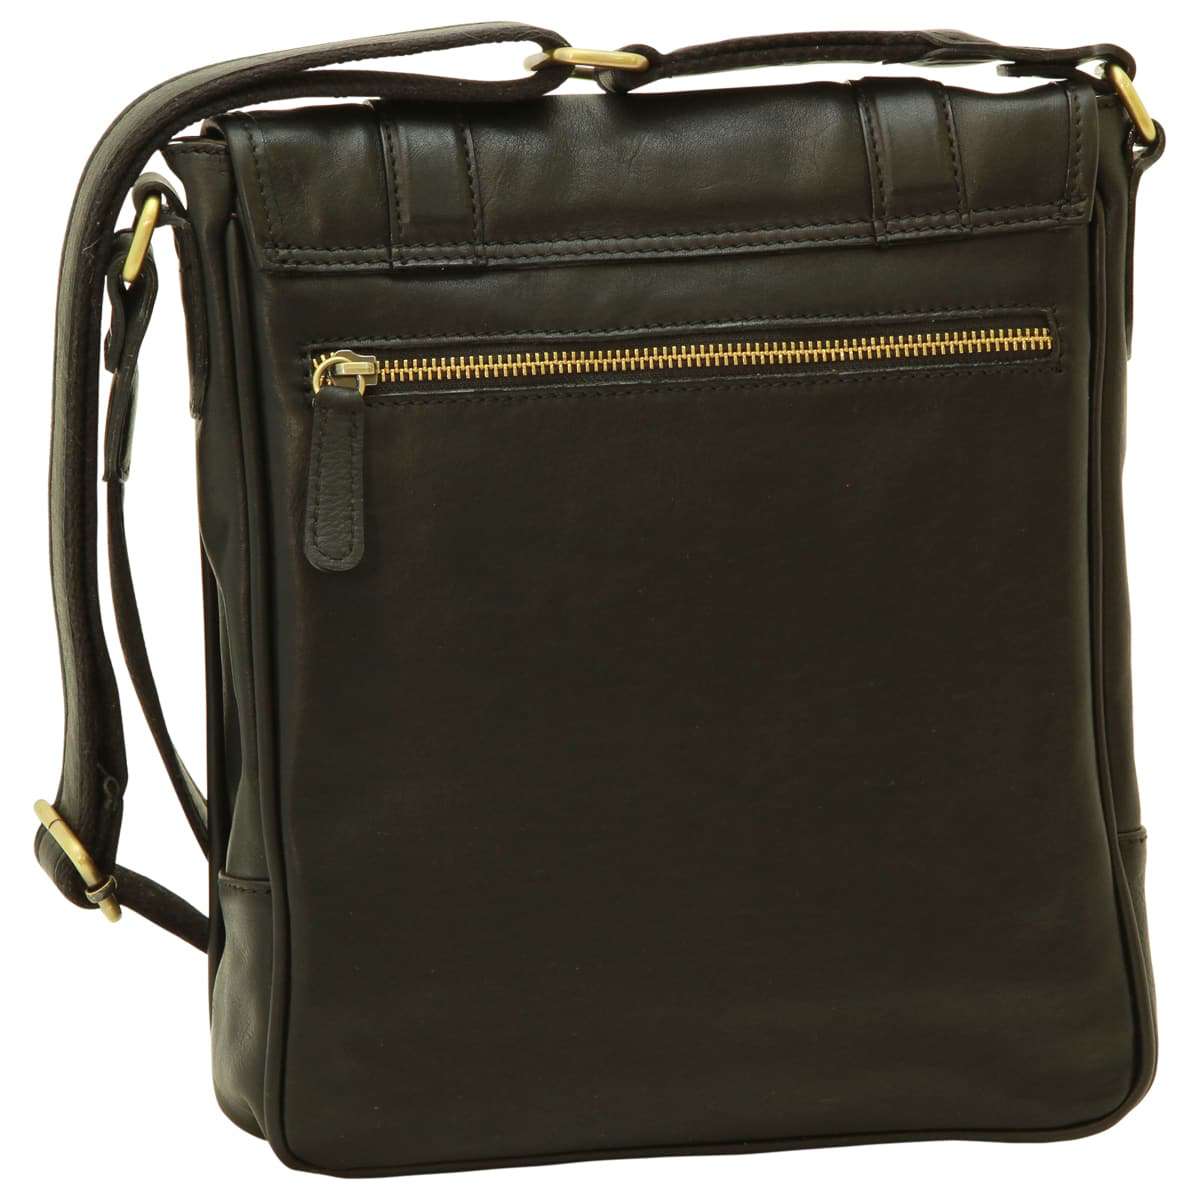 Soft Calfskin Leather Satchel Bag - Black | 031091NE | EURO | Old Angler Firenze